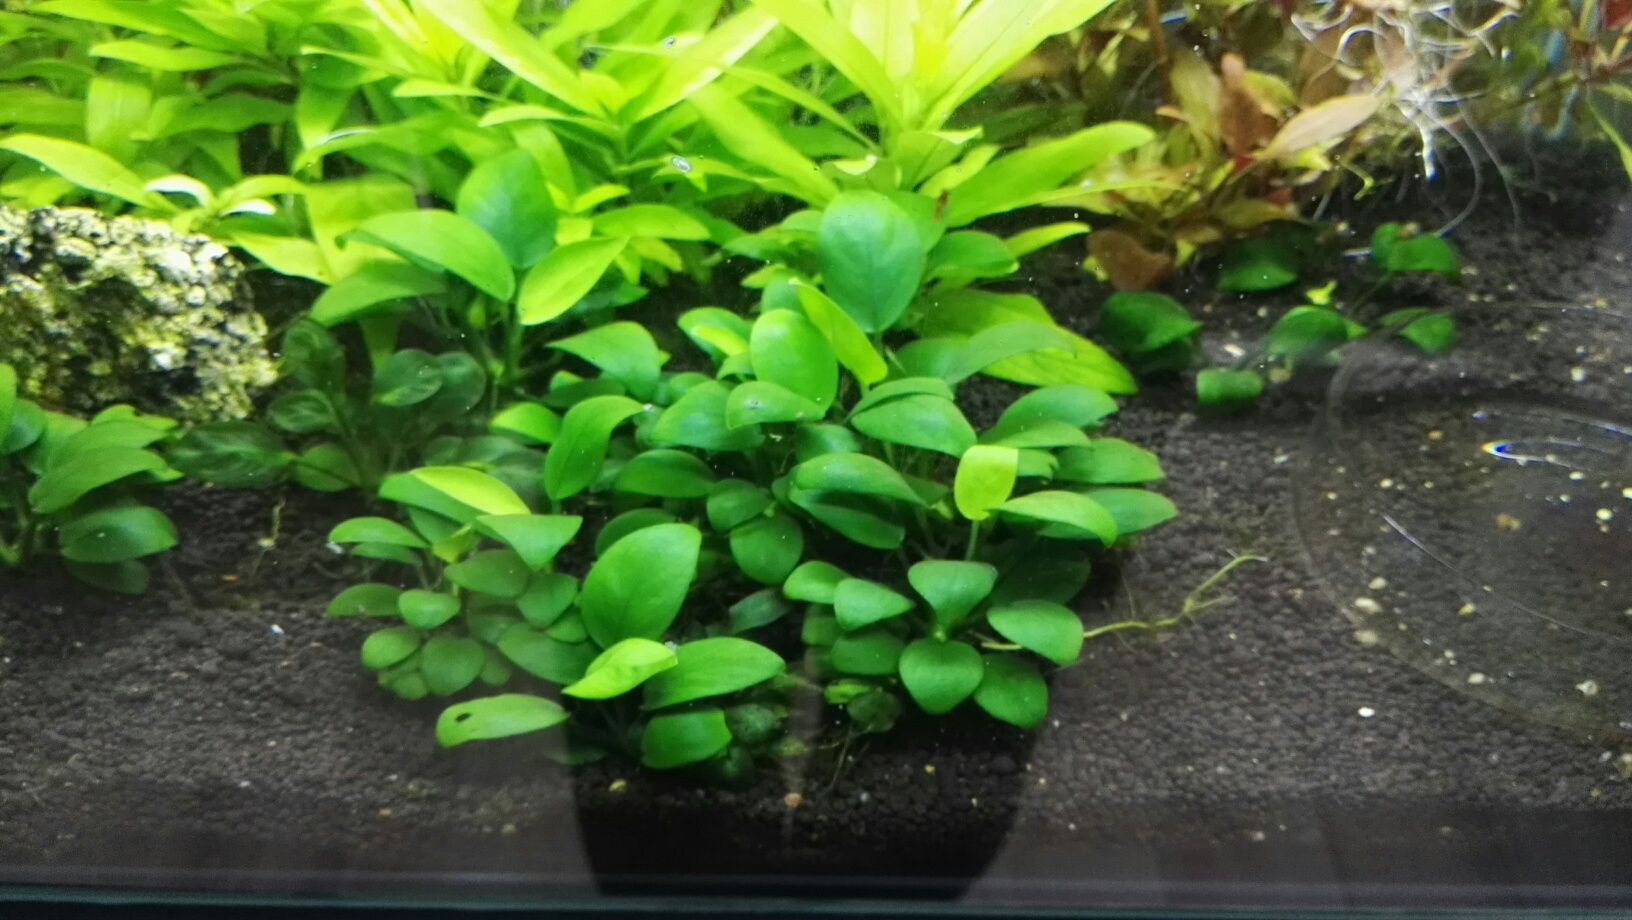 Pack de plantas para aquário - 2, 5, 9 ou 15 espécies